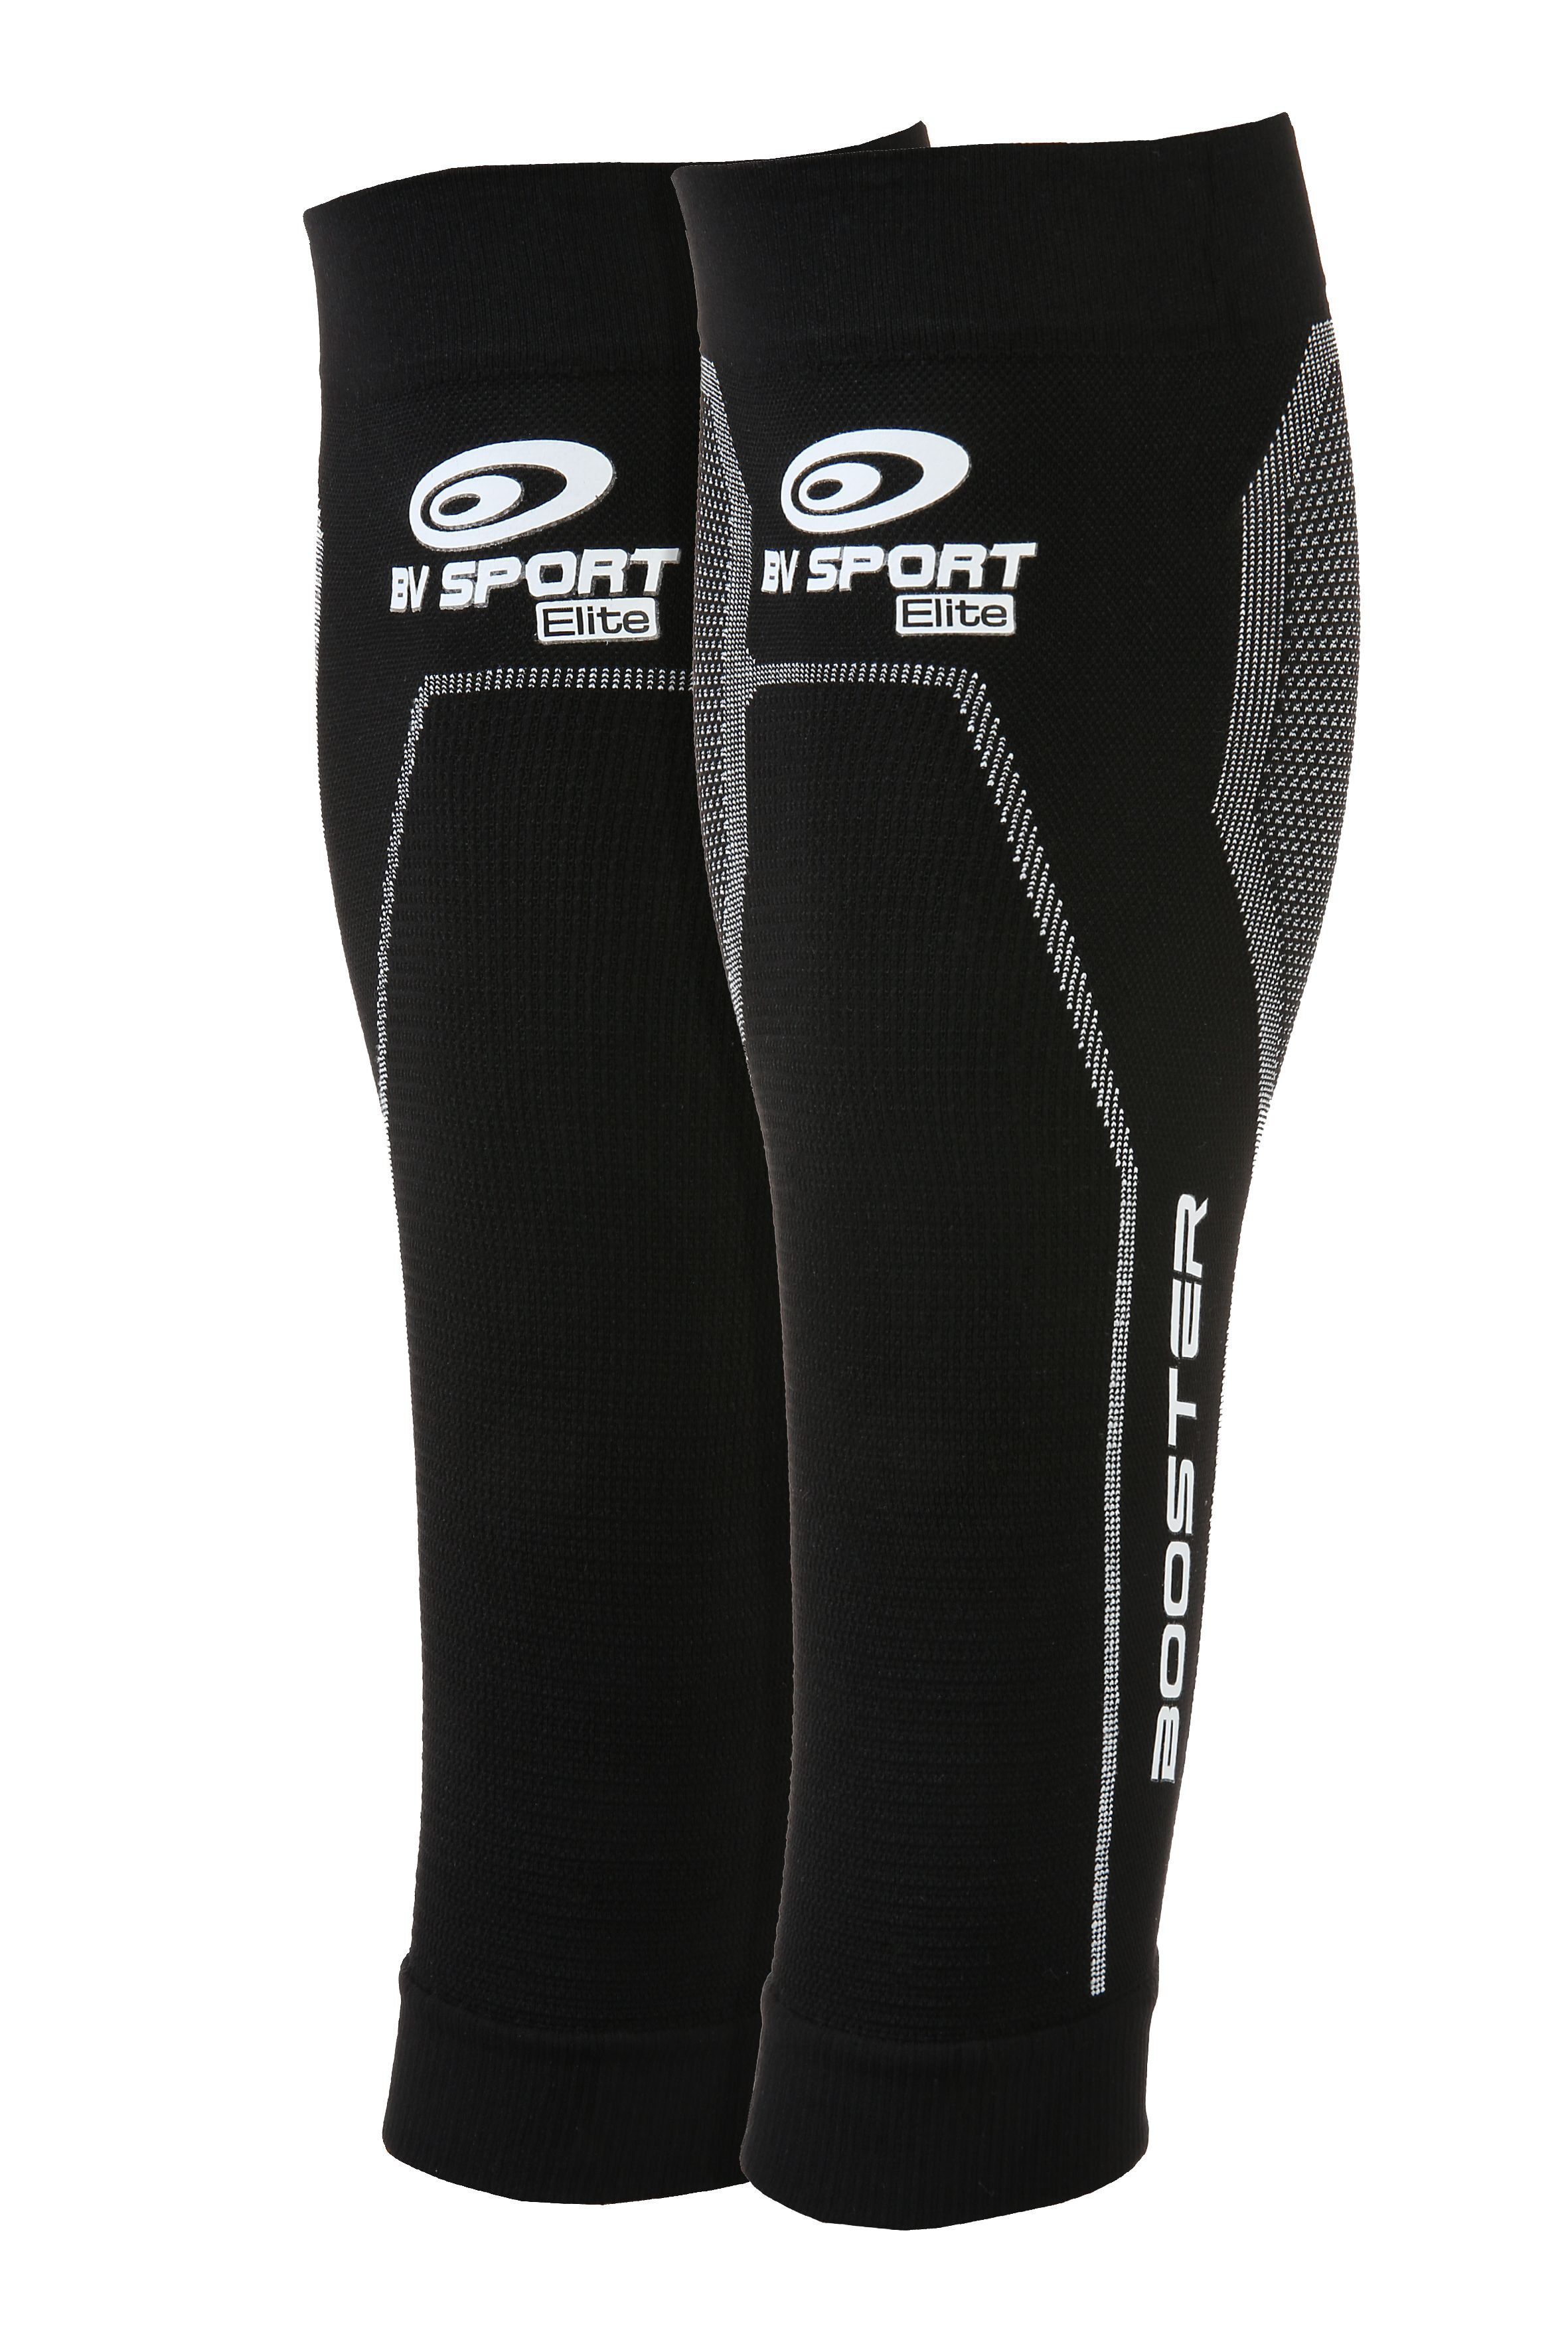 BV Sport - Booster Elite - Compression socks